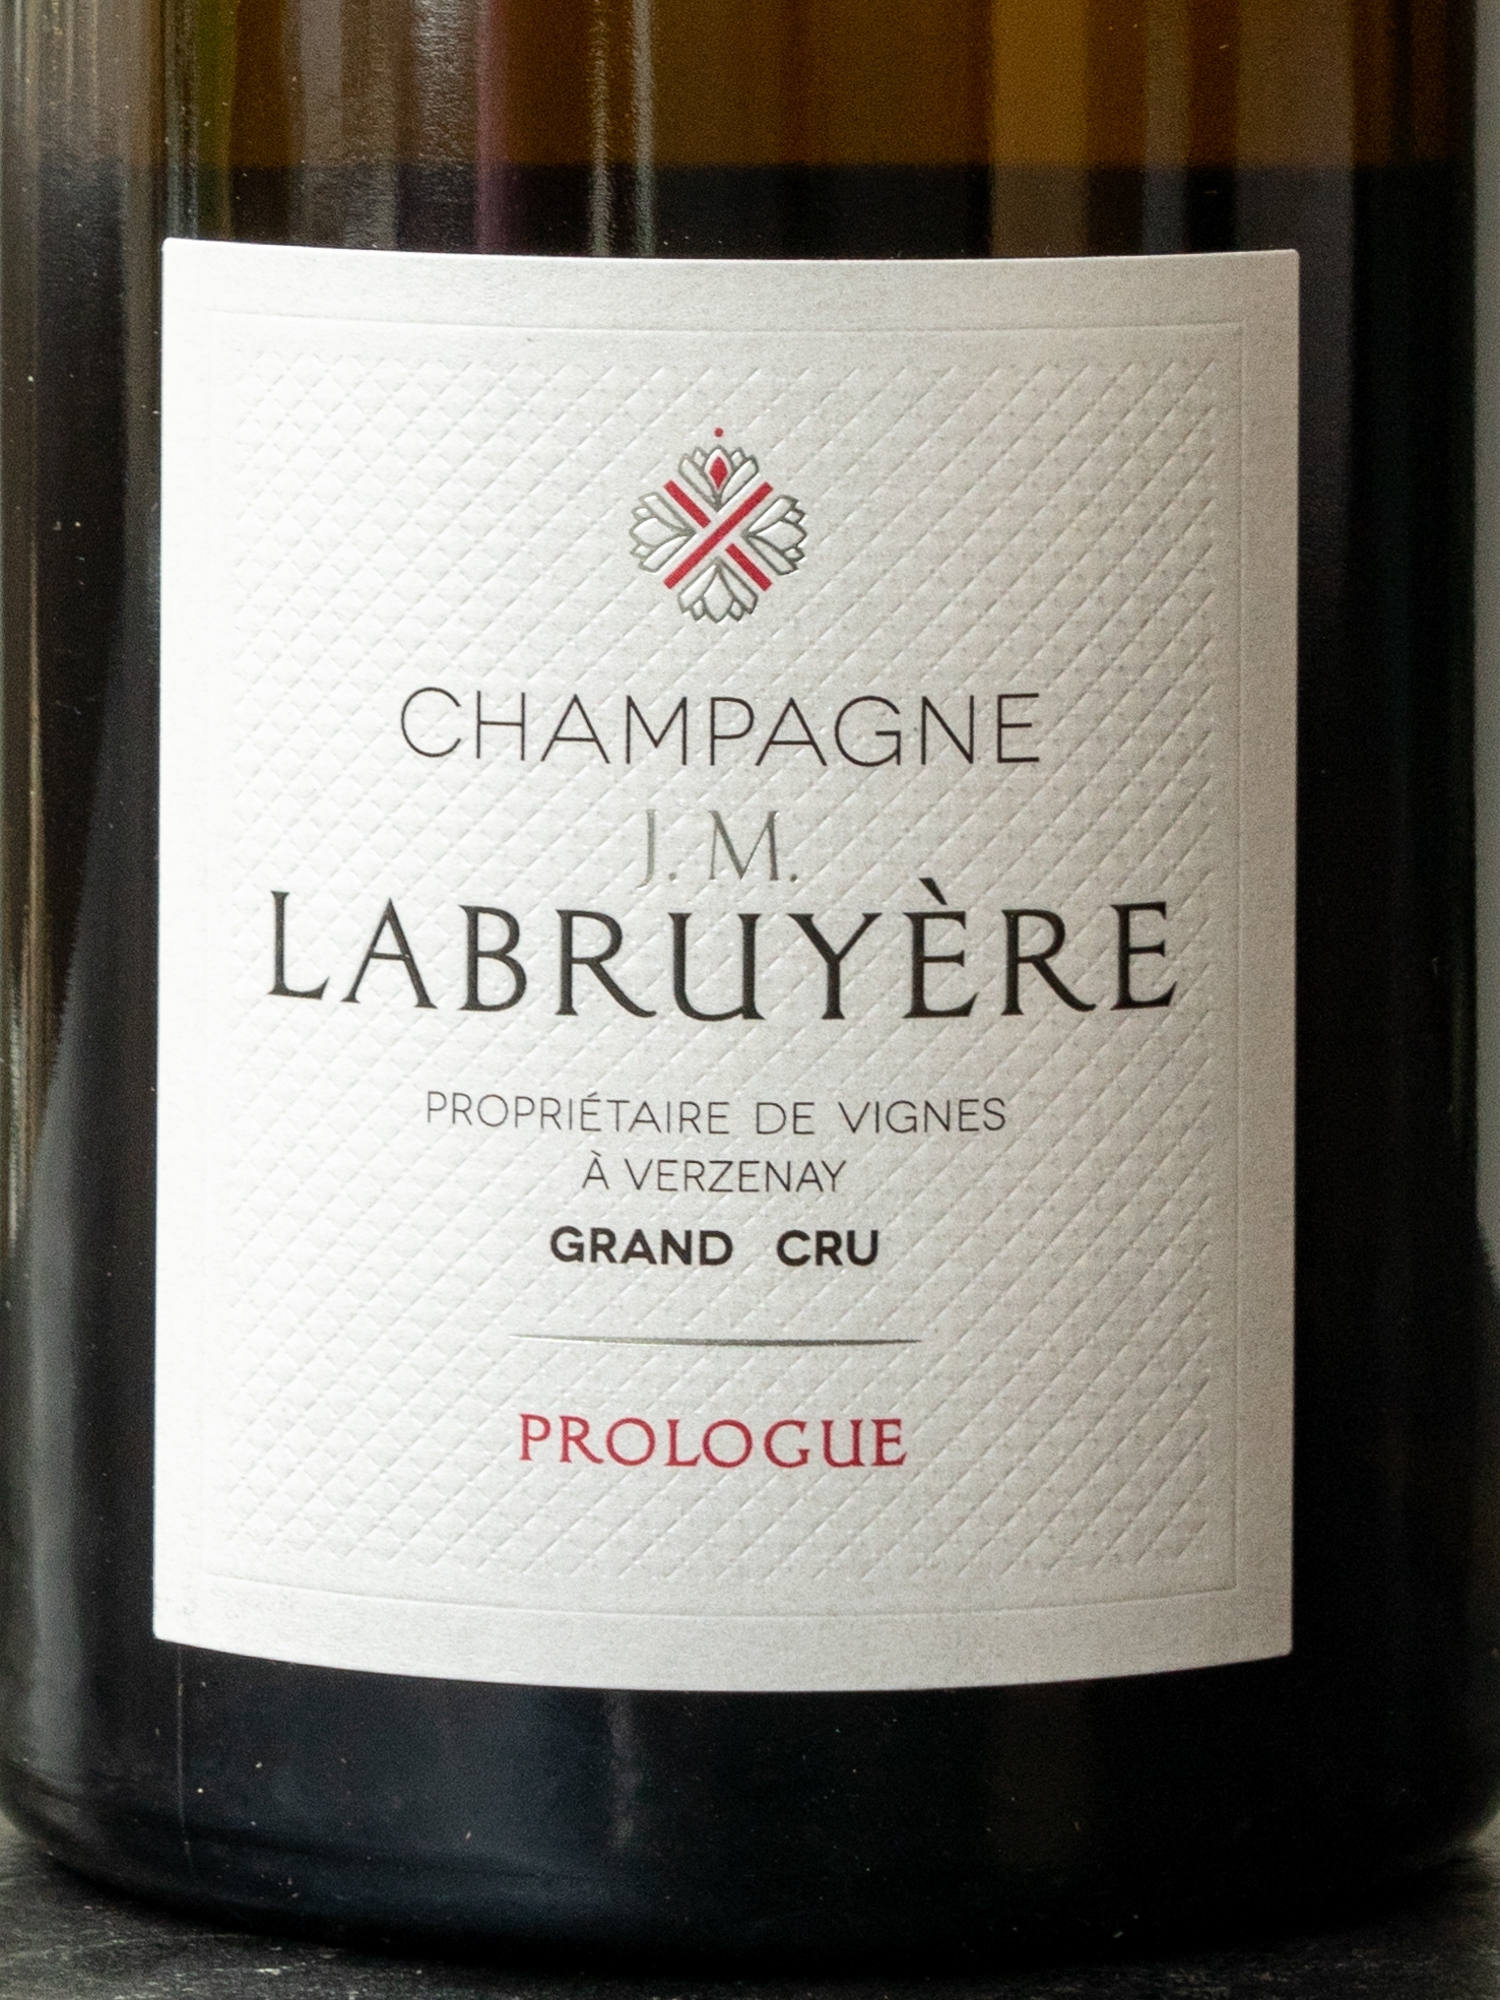 Этикетка J.M. Labruyere Champagne Grand Cru Prologue